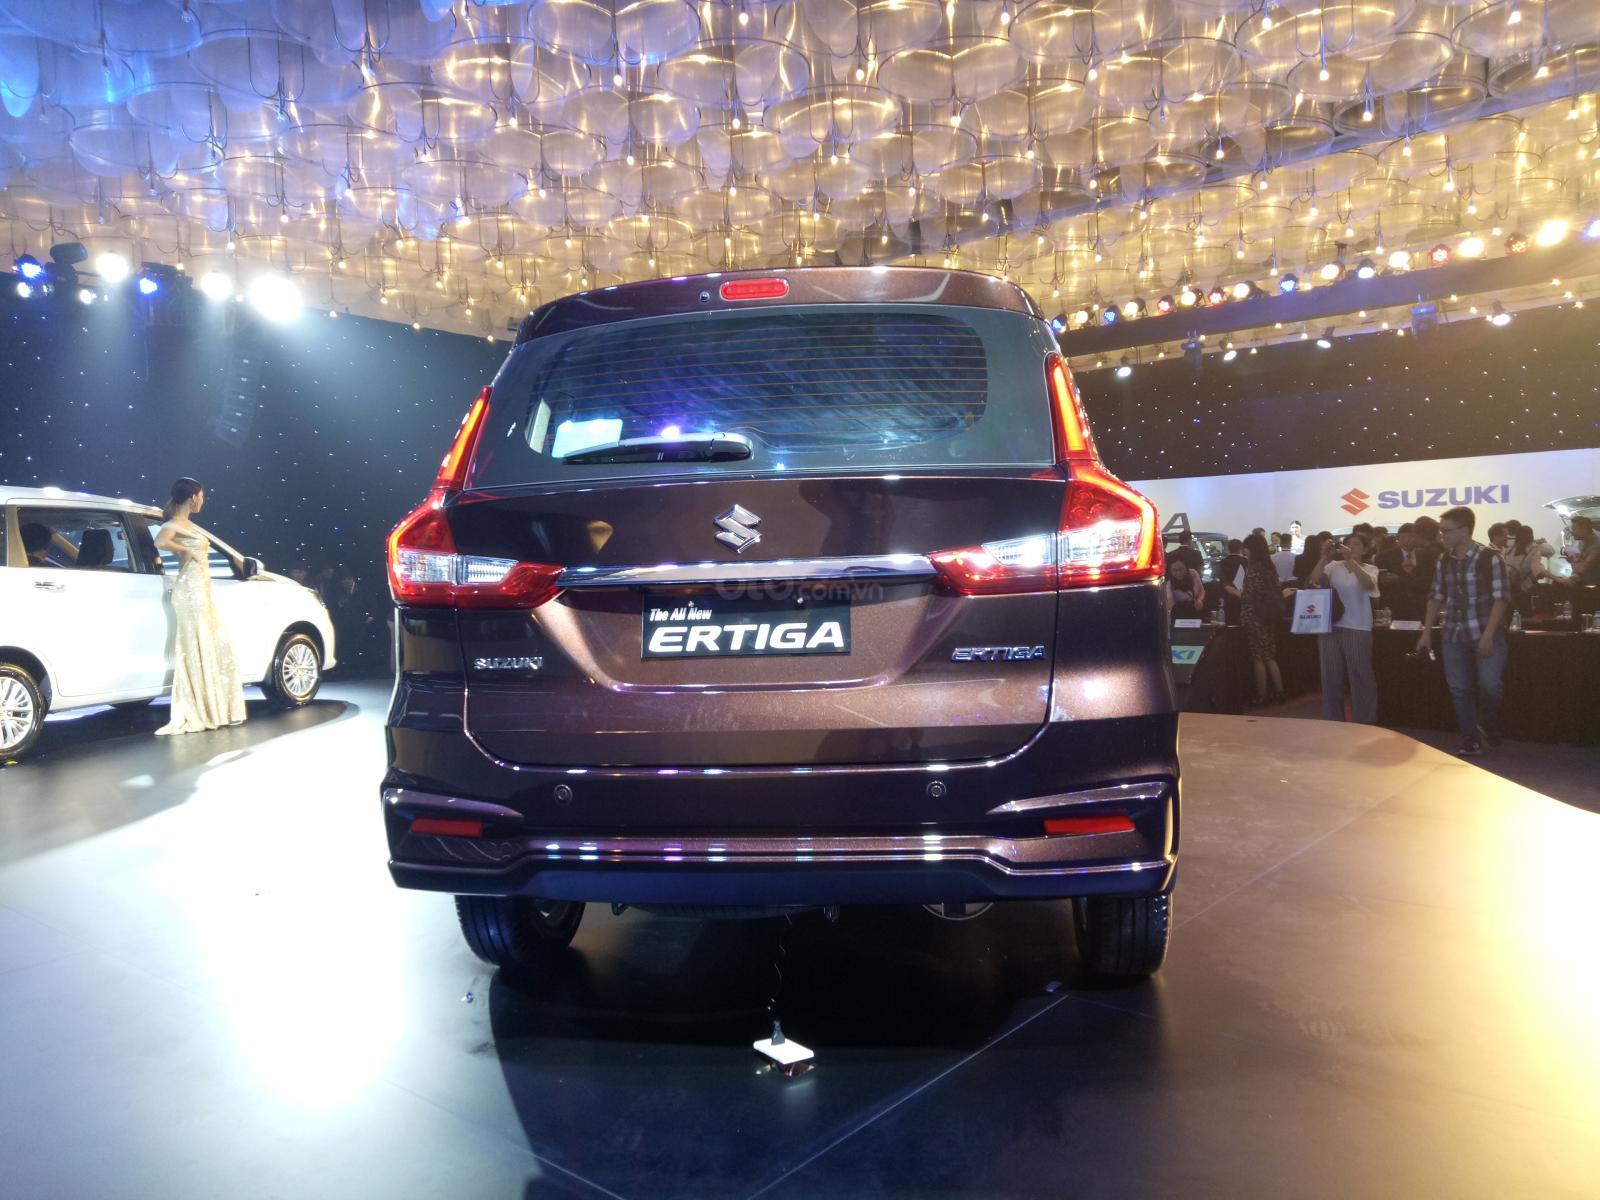 Chi tiết hình ảnh của Suzuki Ertiga 2019 - Ảnh 6.